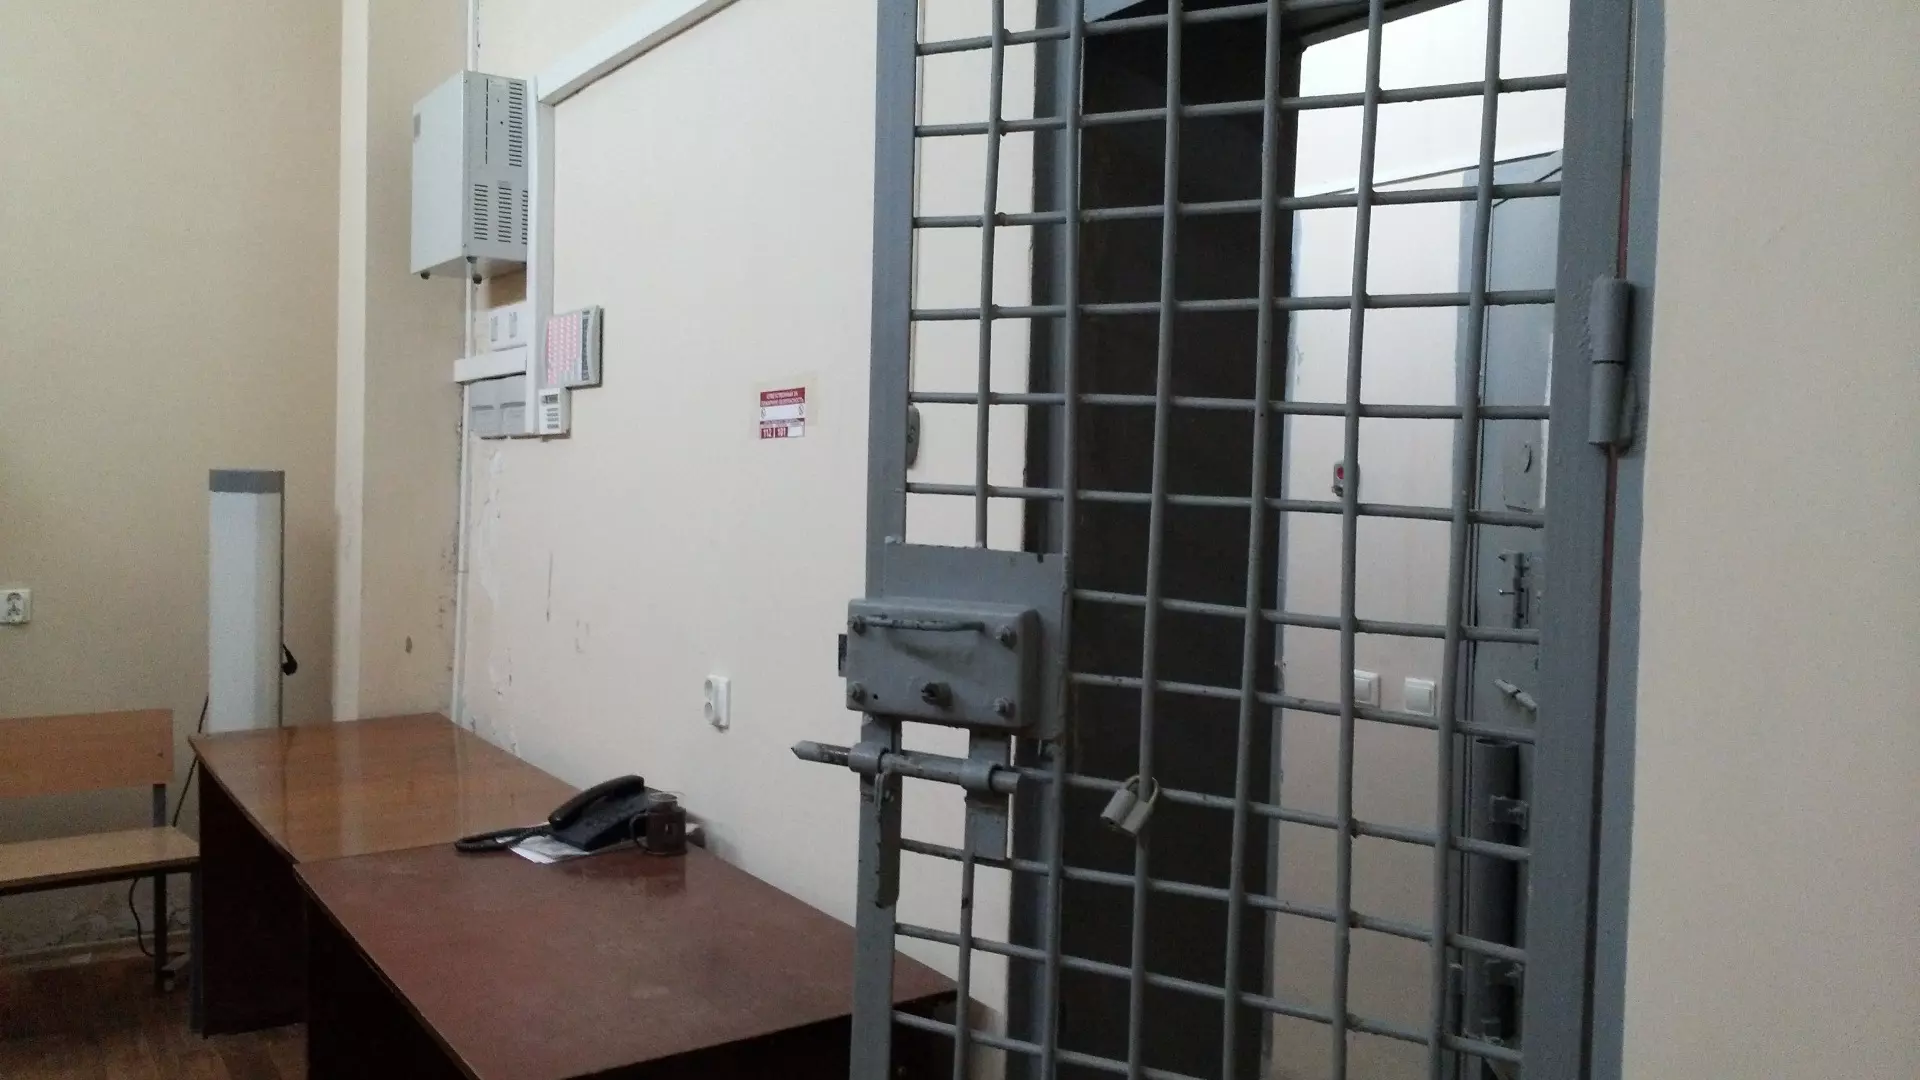 Задержанный в Челябинске бывший замдиректора оборонного завода не признает вину